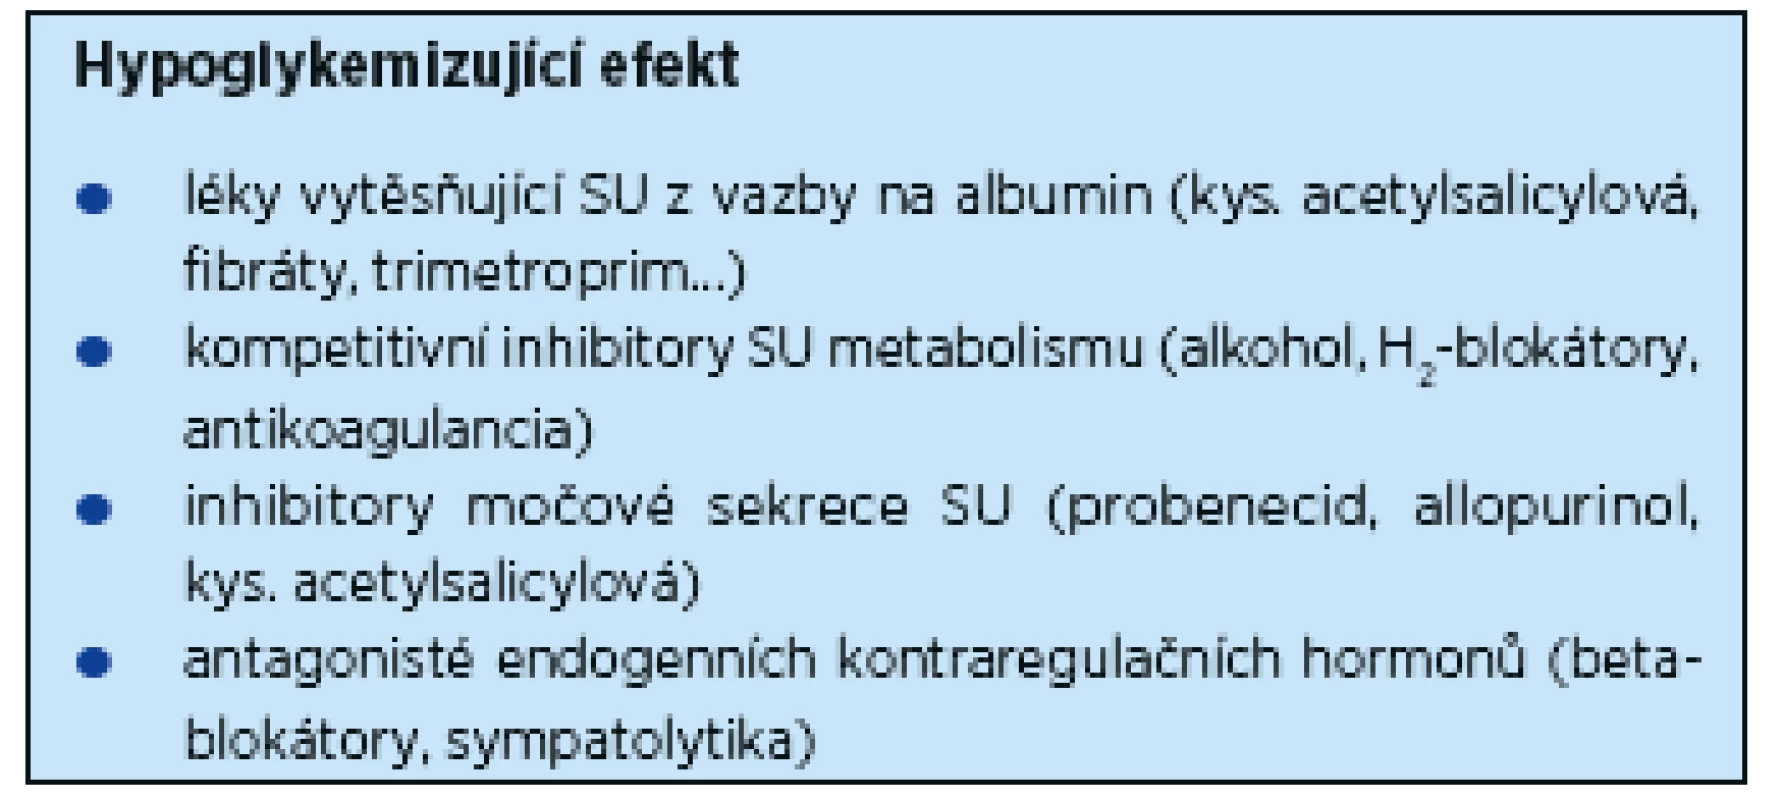 Sulfonylurea (SU) – lékové interakce způsobující hypoglykemii